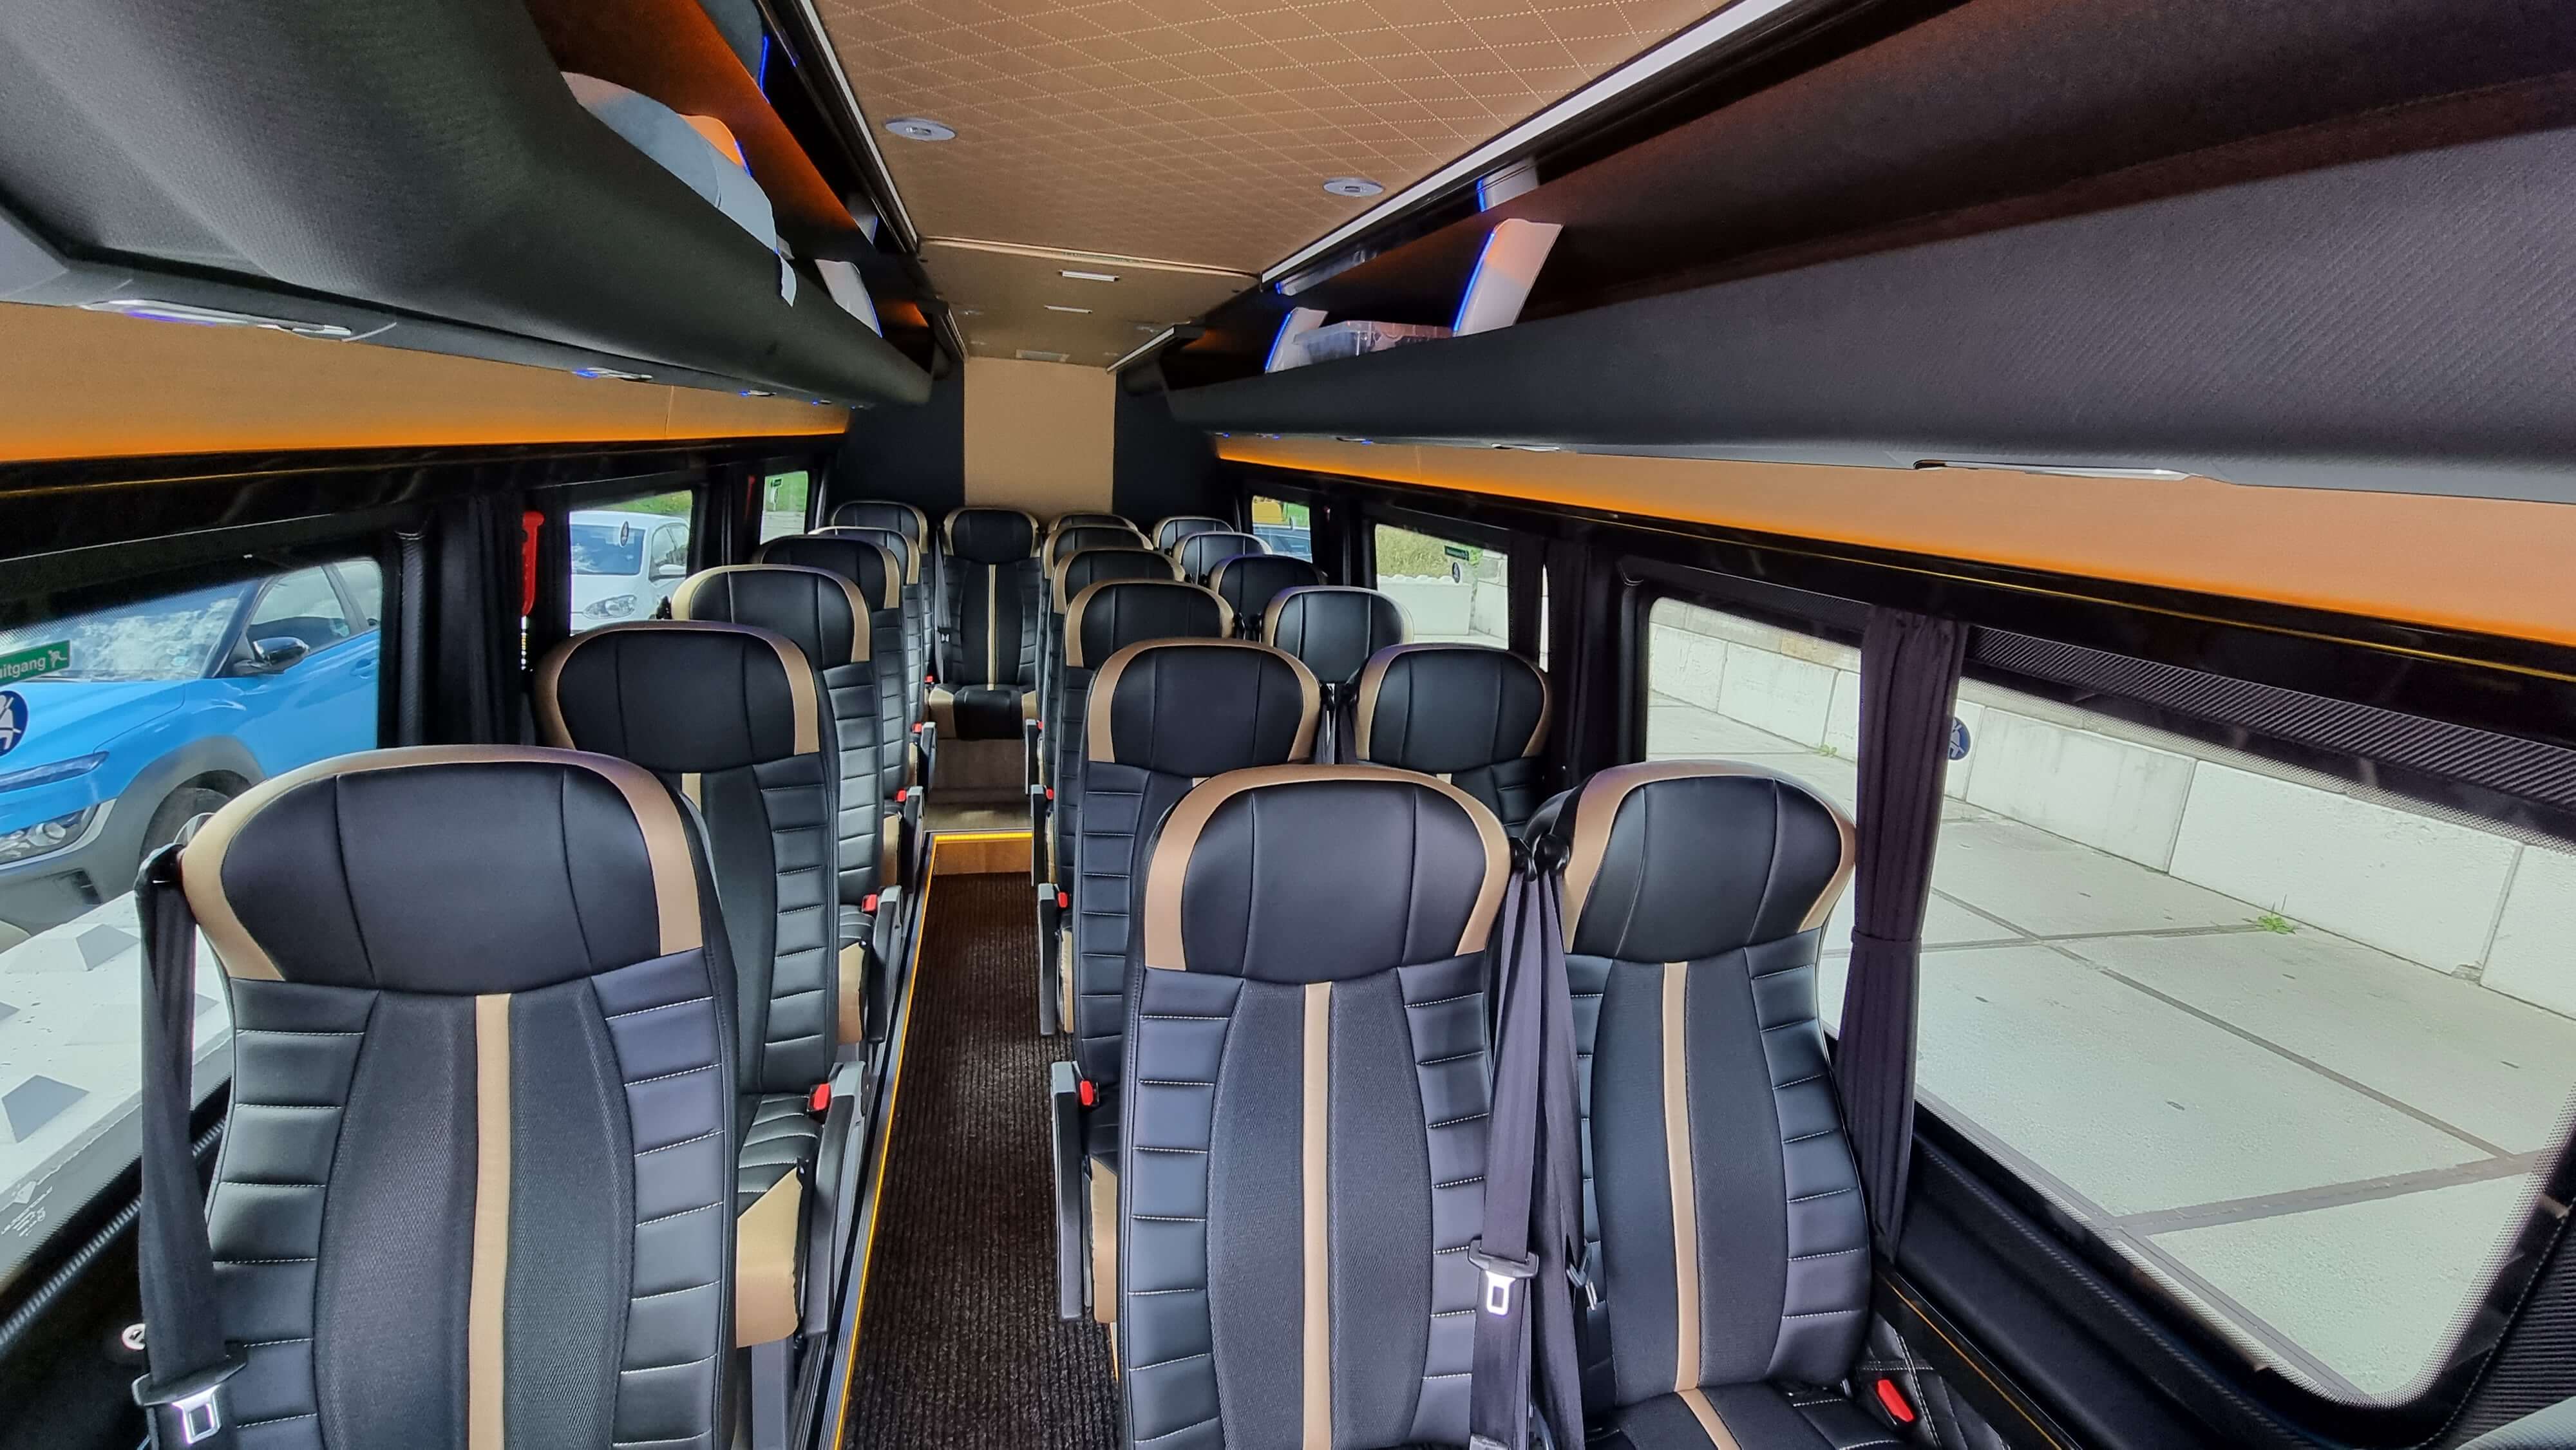 Huur een Midibus (Mercedes VIP Sprinter 2021) met 20 stoelen van Direct Vip Service uit Amsterdam 